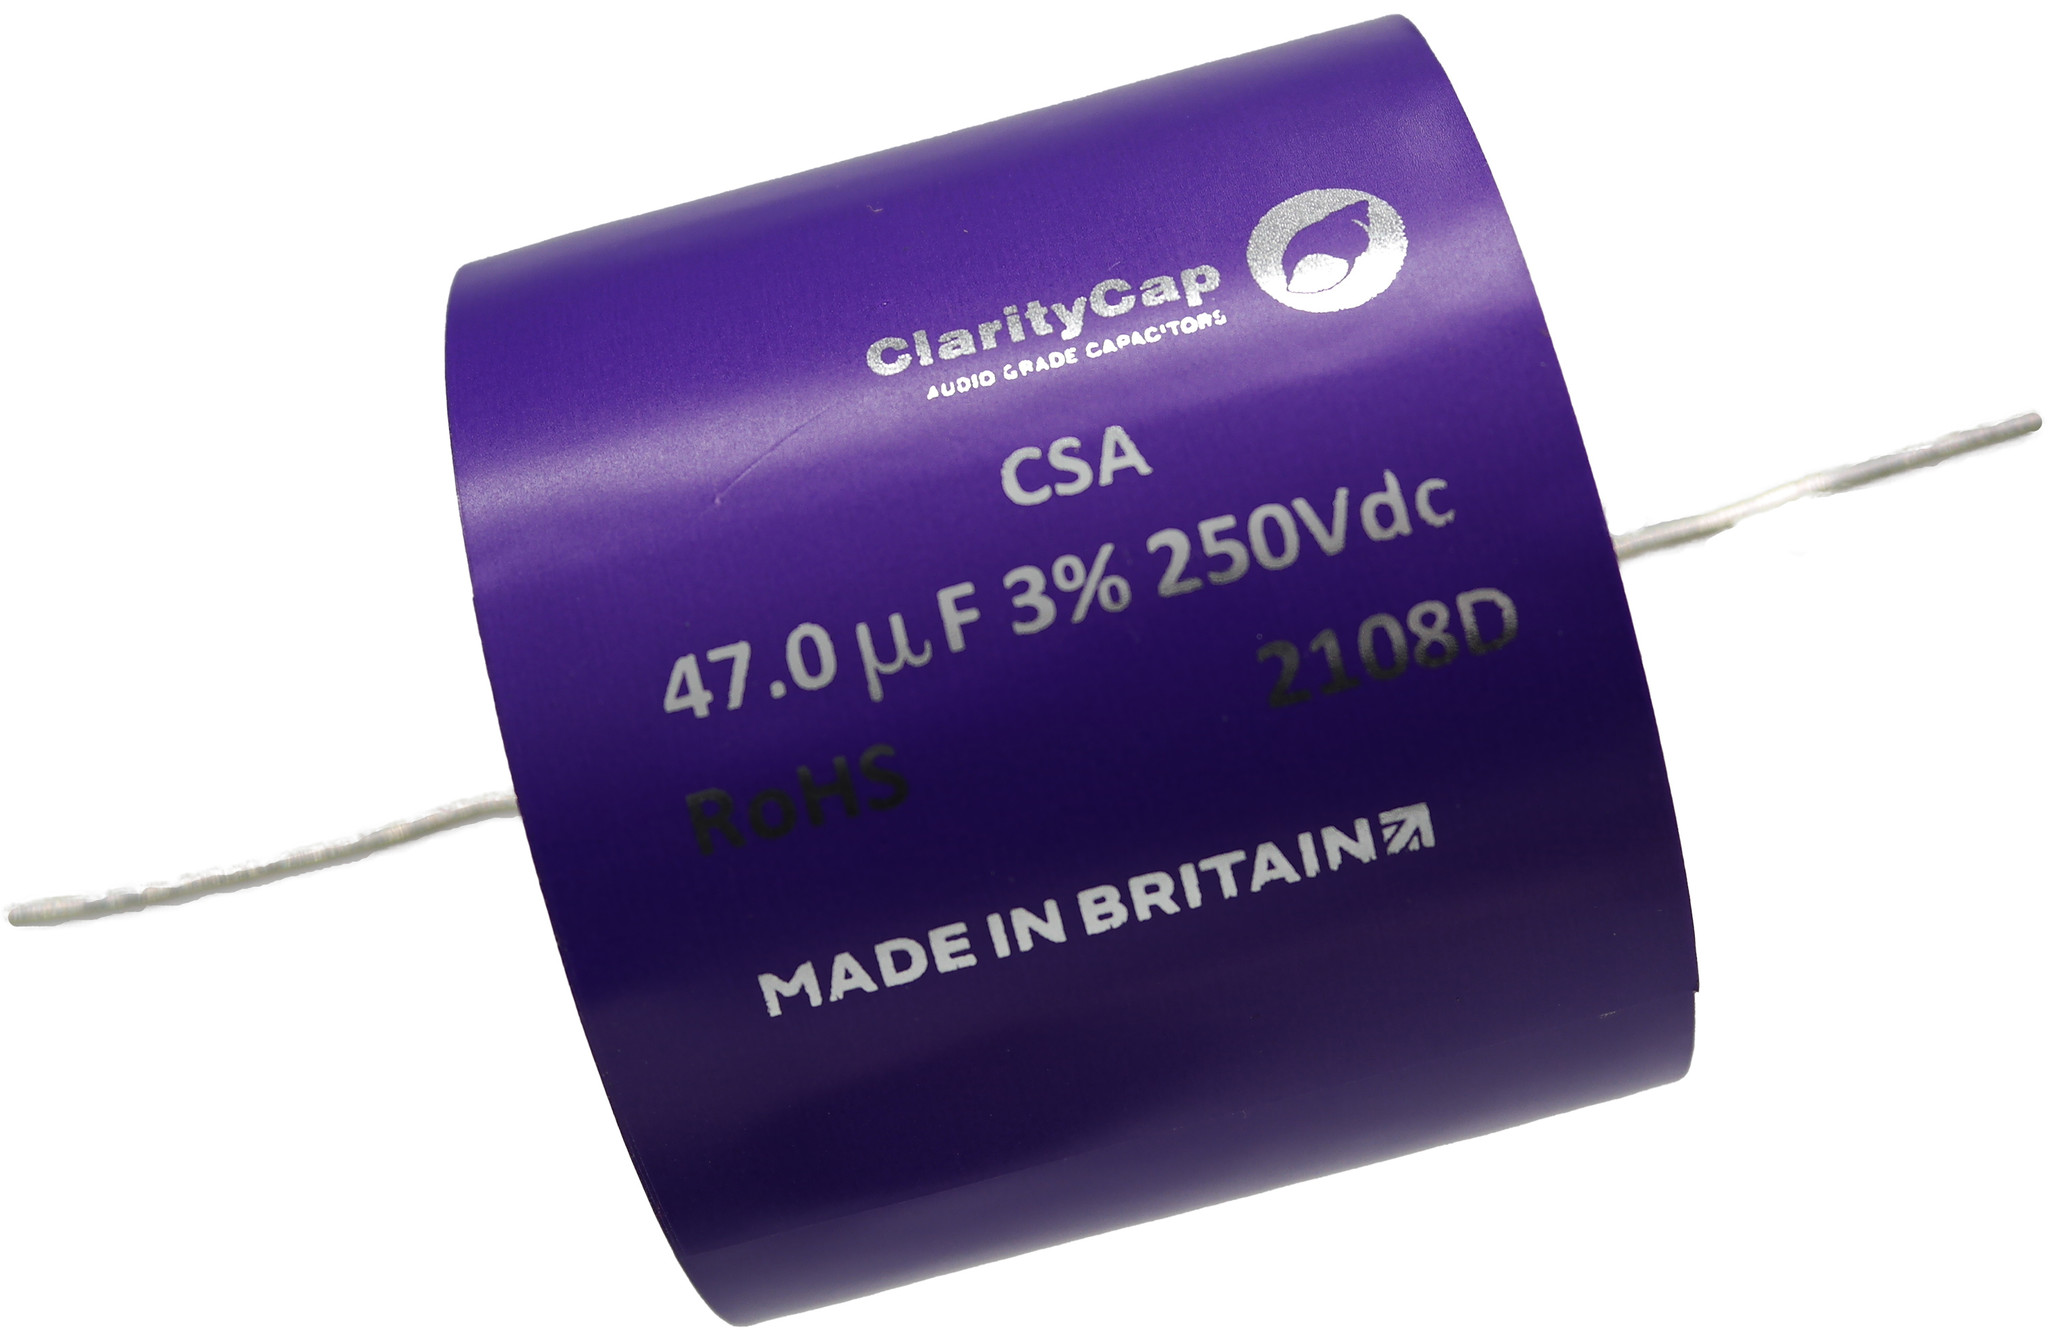 Condensatoare - Condensator film ClarityCap CSA47uH250Vdc| 47 µF | 3% | 250 V, audioclub.ro